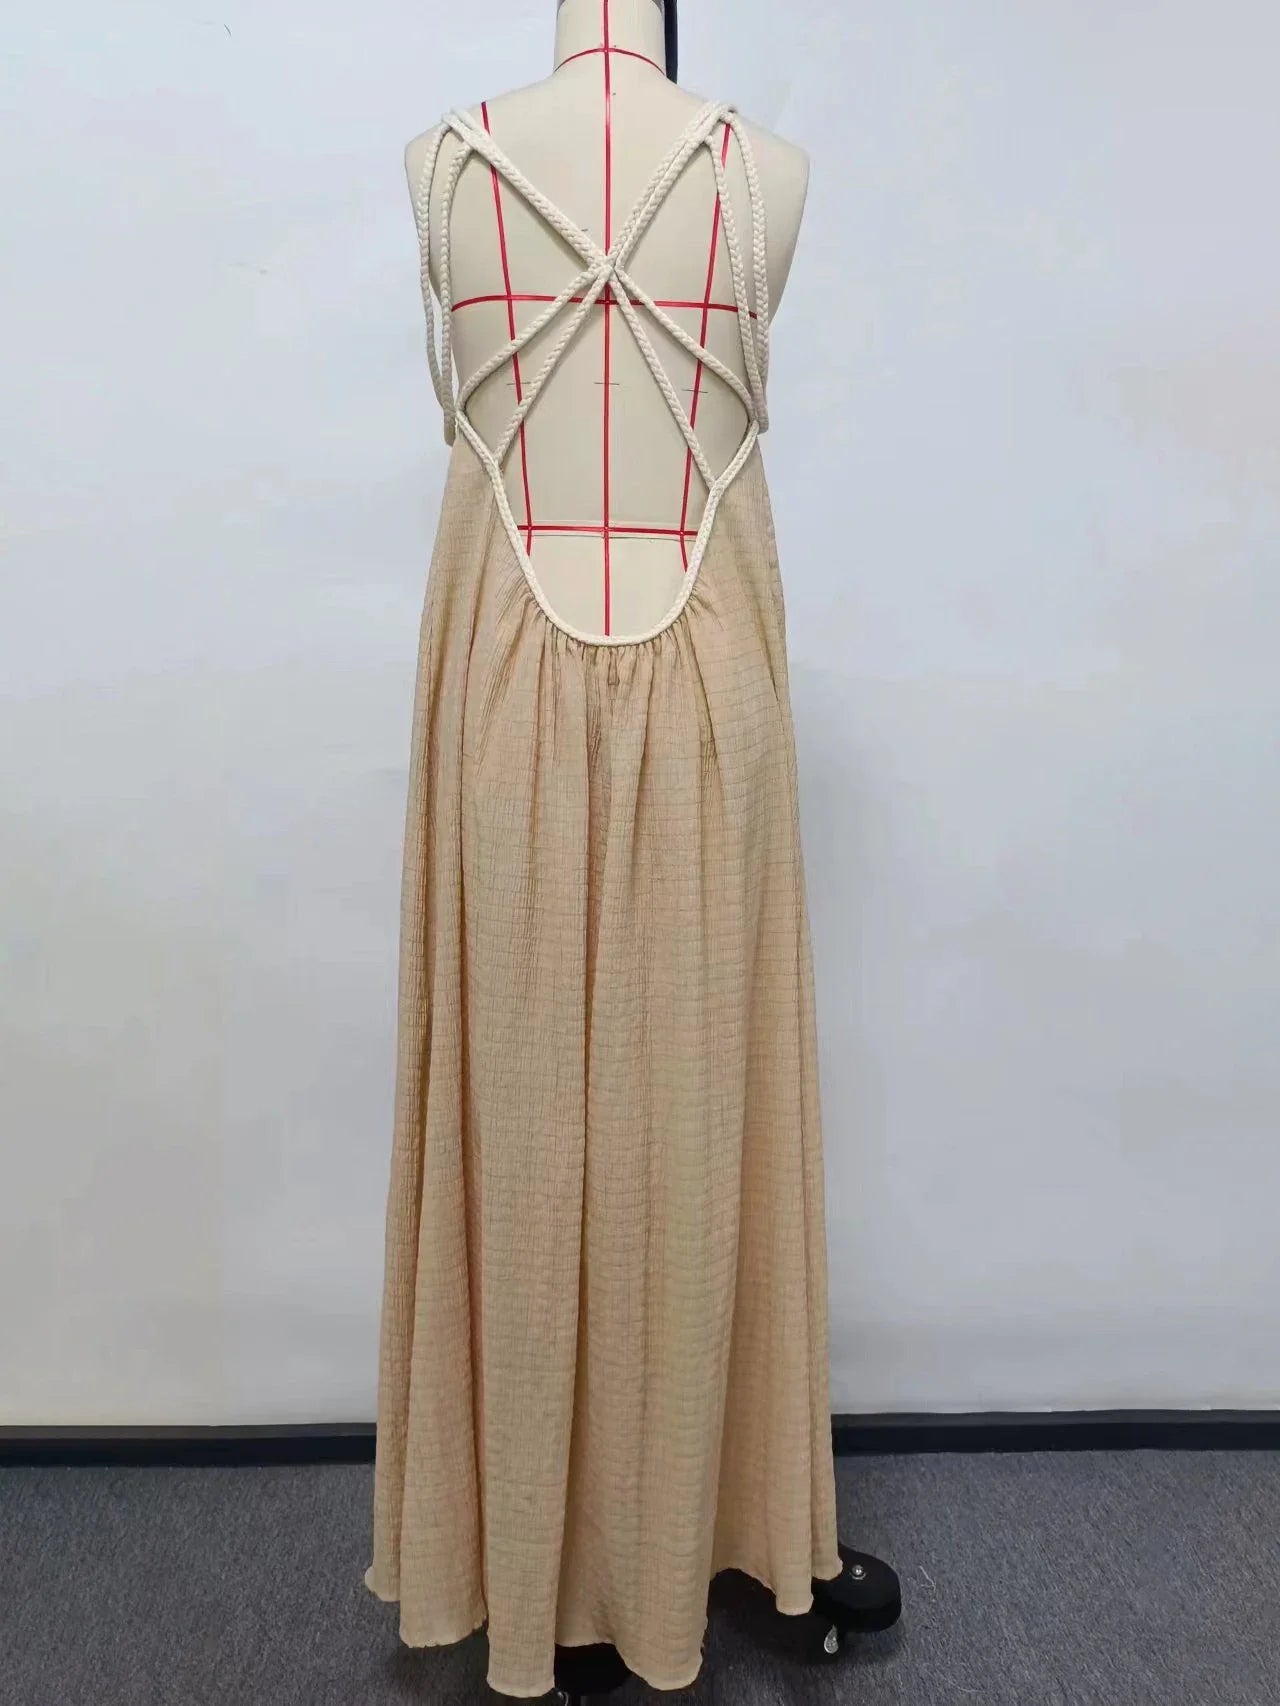 Loose Sleeveless Maxi Beach Dress: Off-Shoulder Crochet Cut-Out Design - All Dresses - Dresses - 8 - 2024